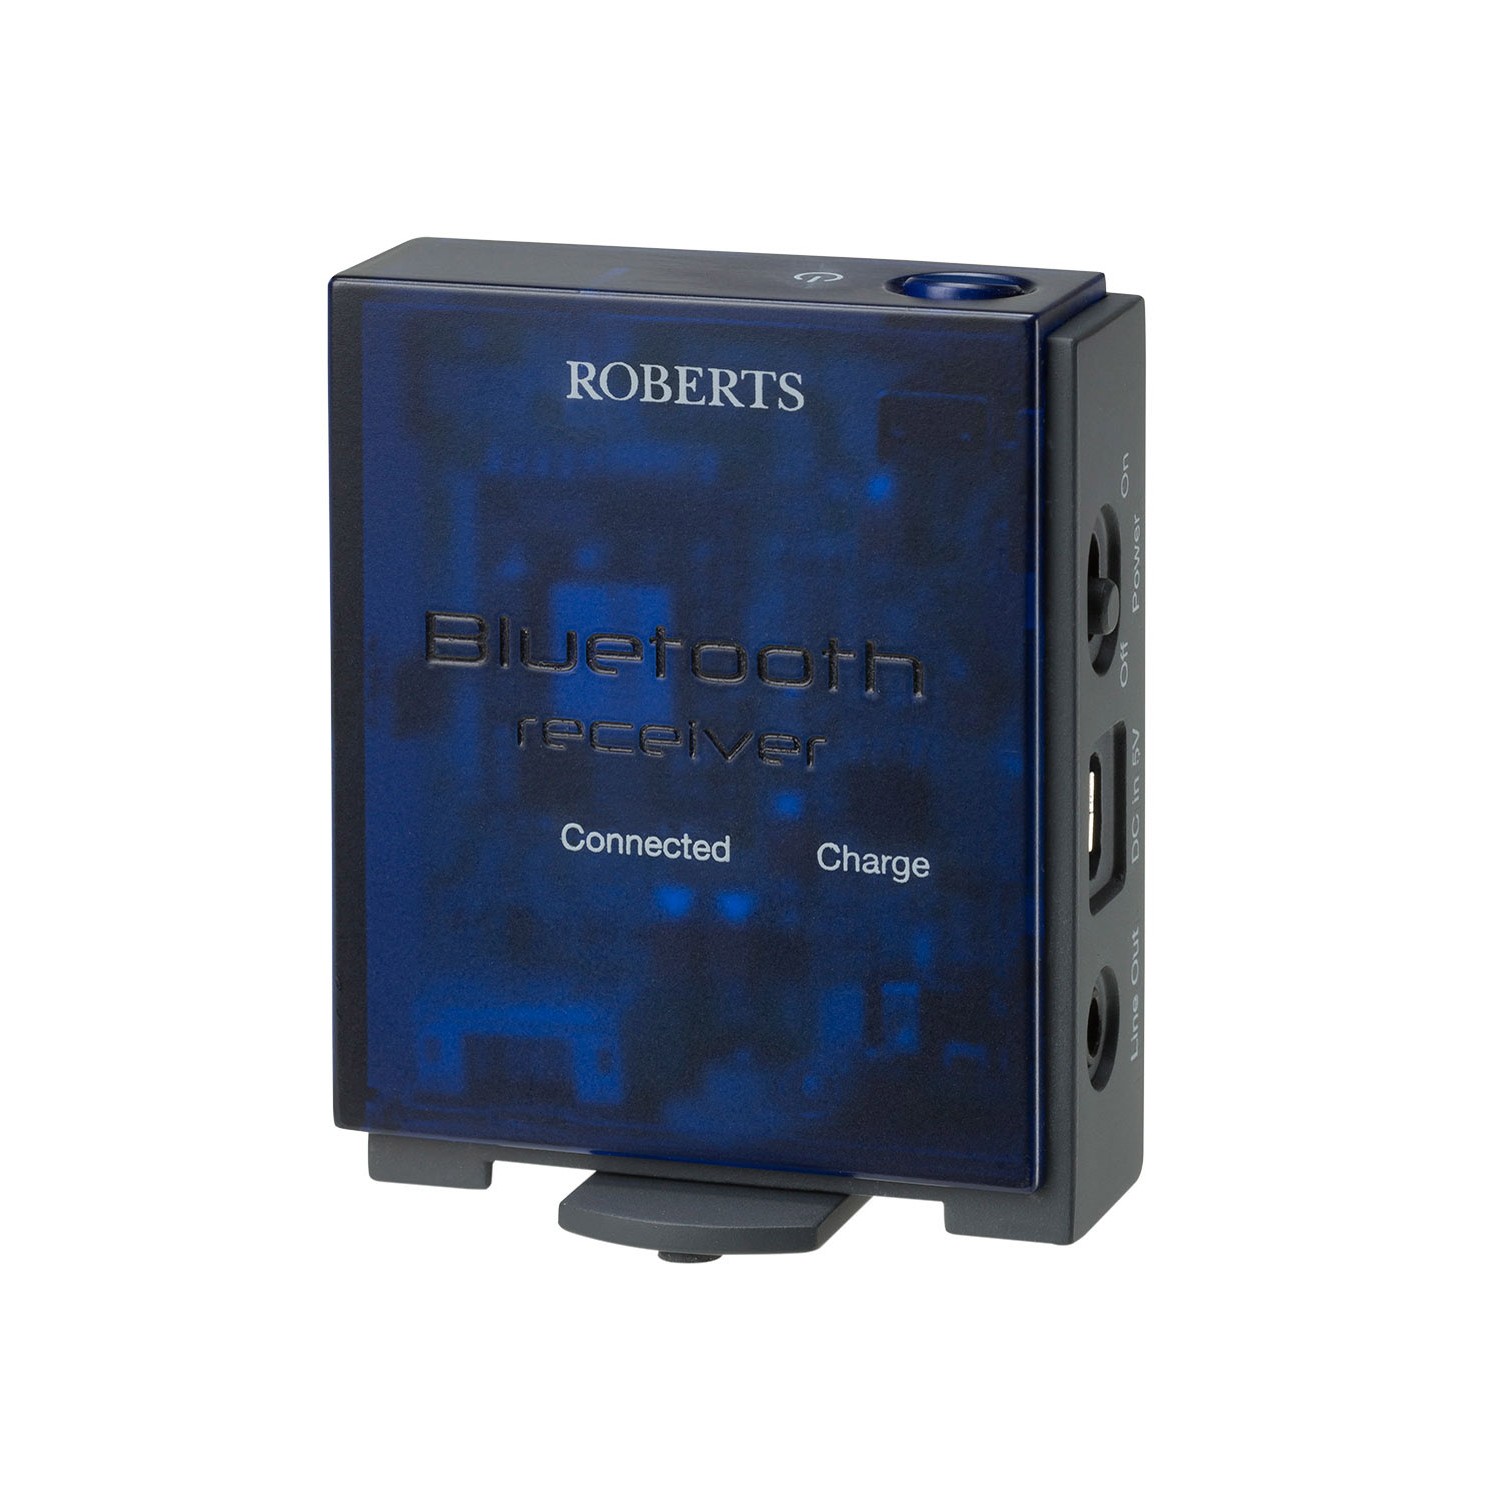 Roberts Bluetooth Empfänger - Musik vom Handy mit jeder Stereoanlage spielen